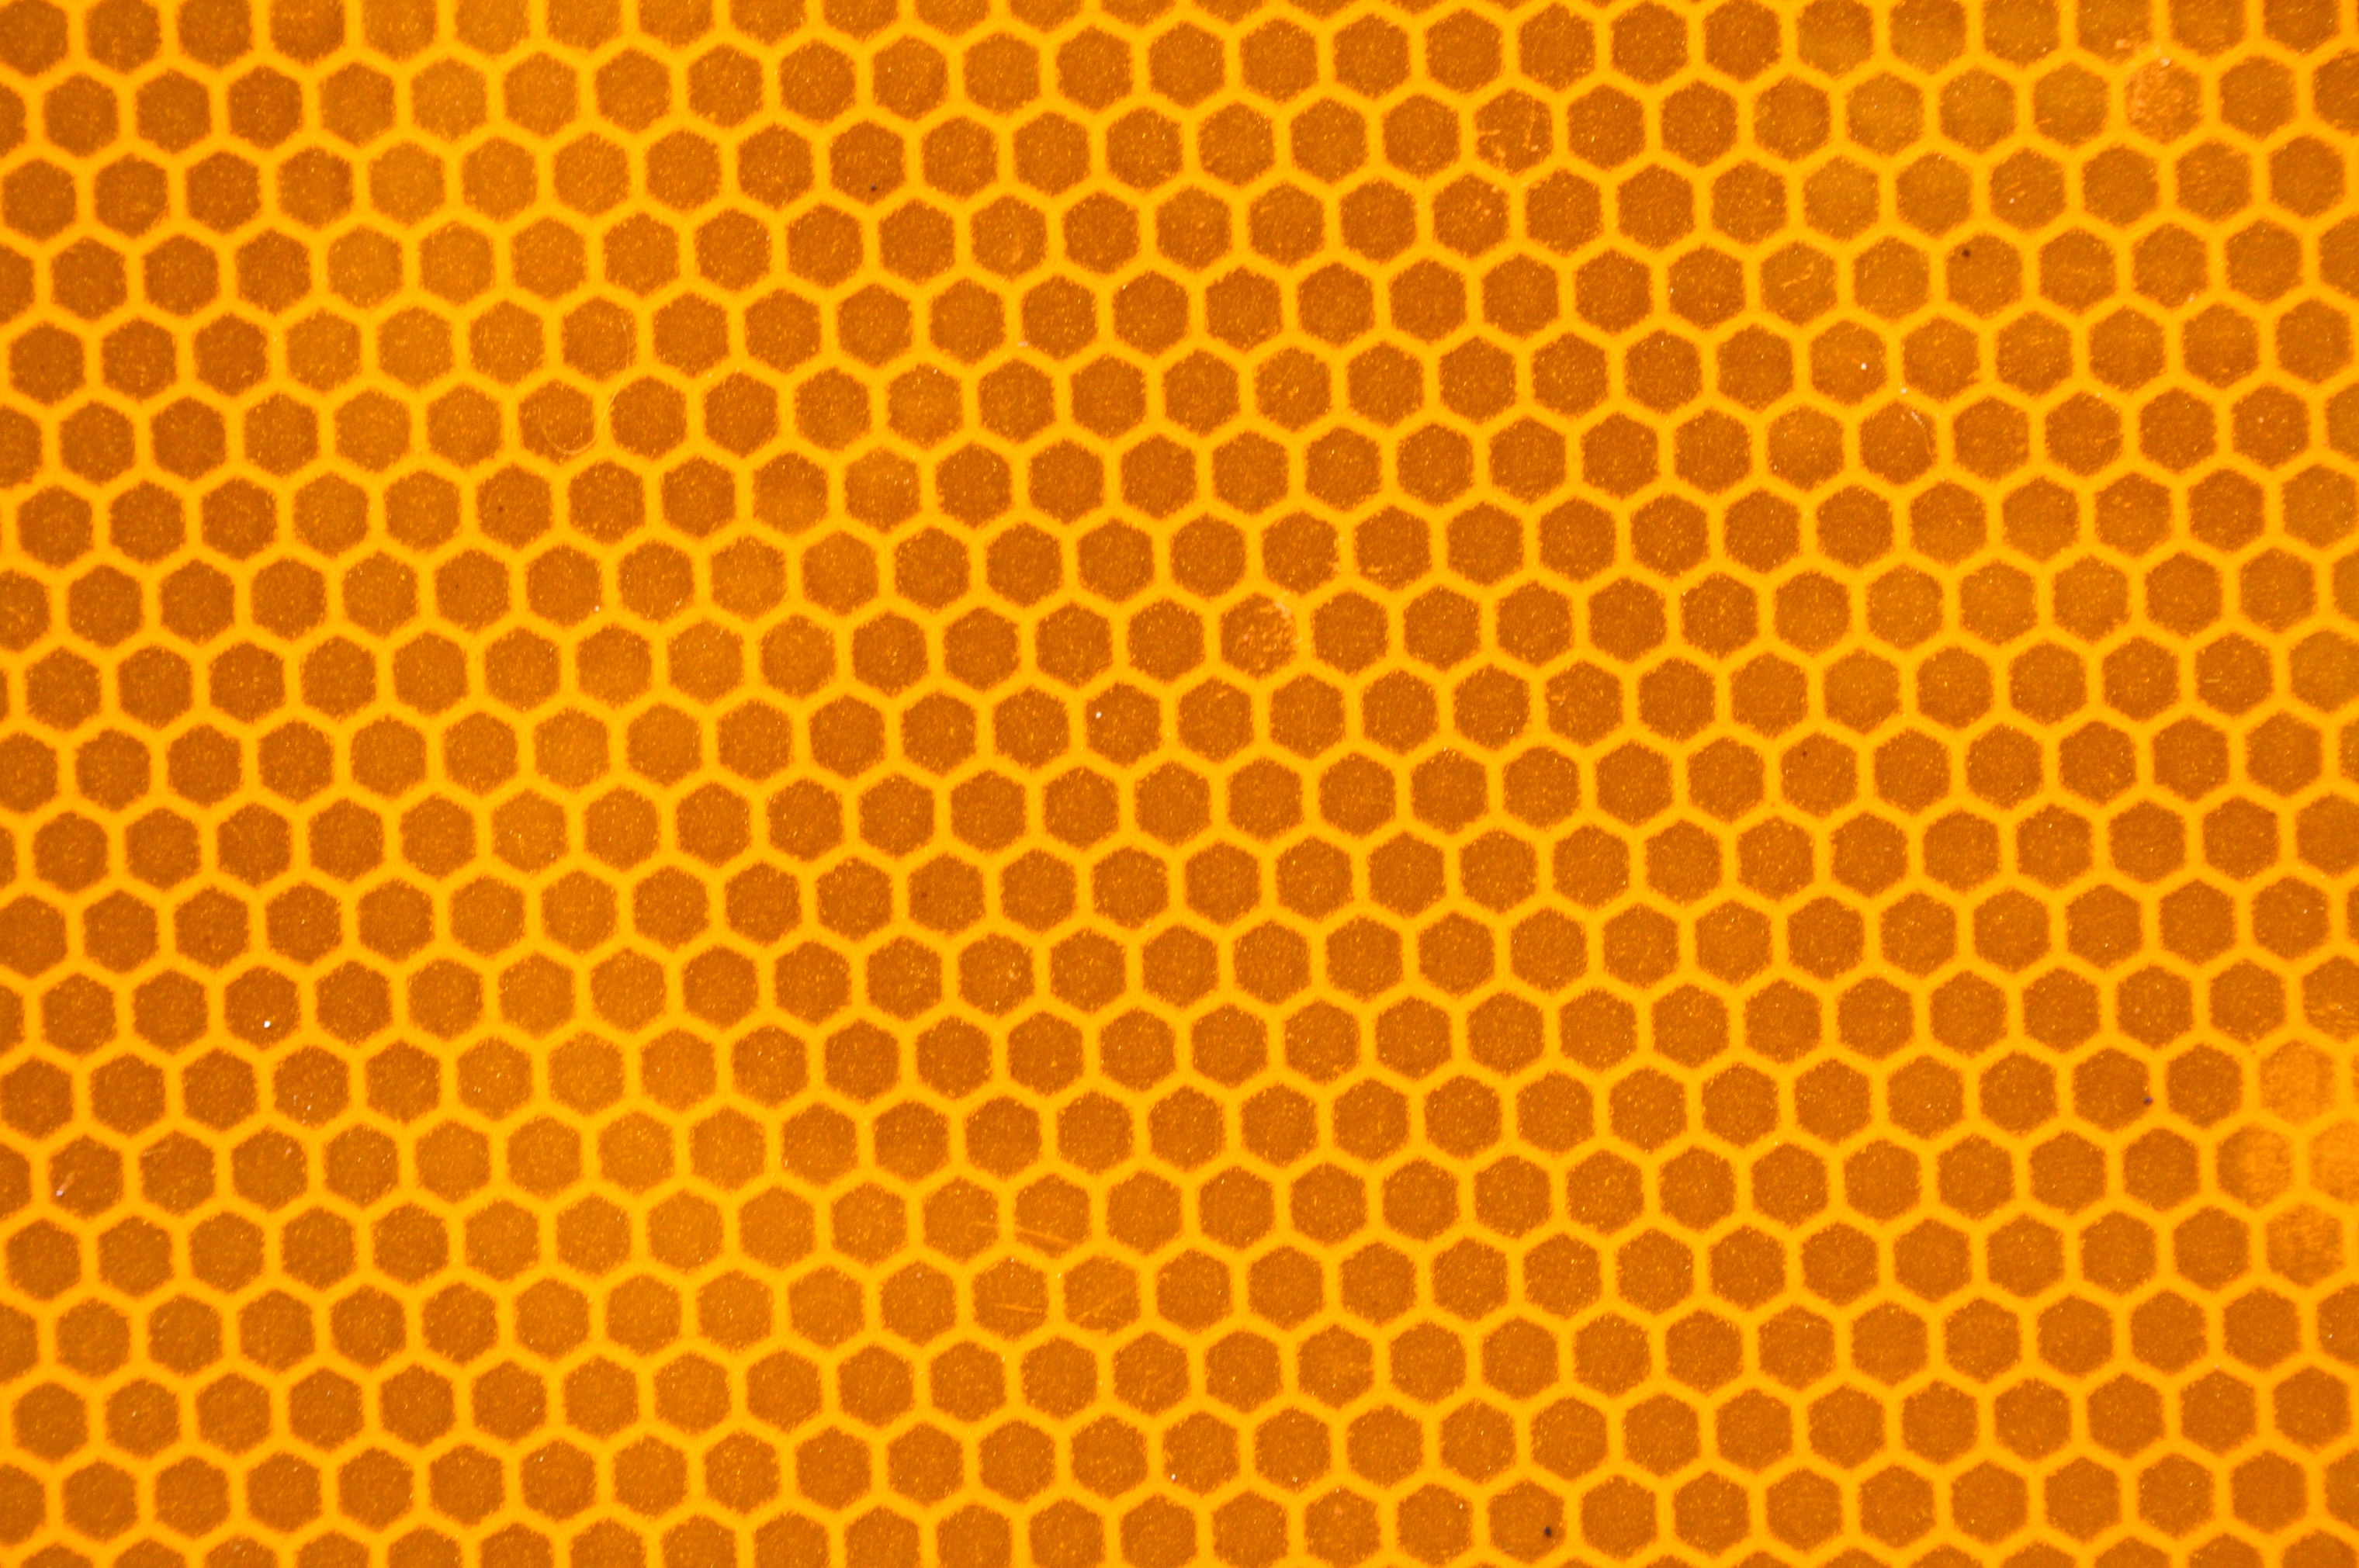 Download wallpaper honey.